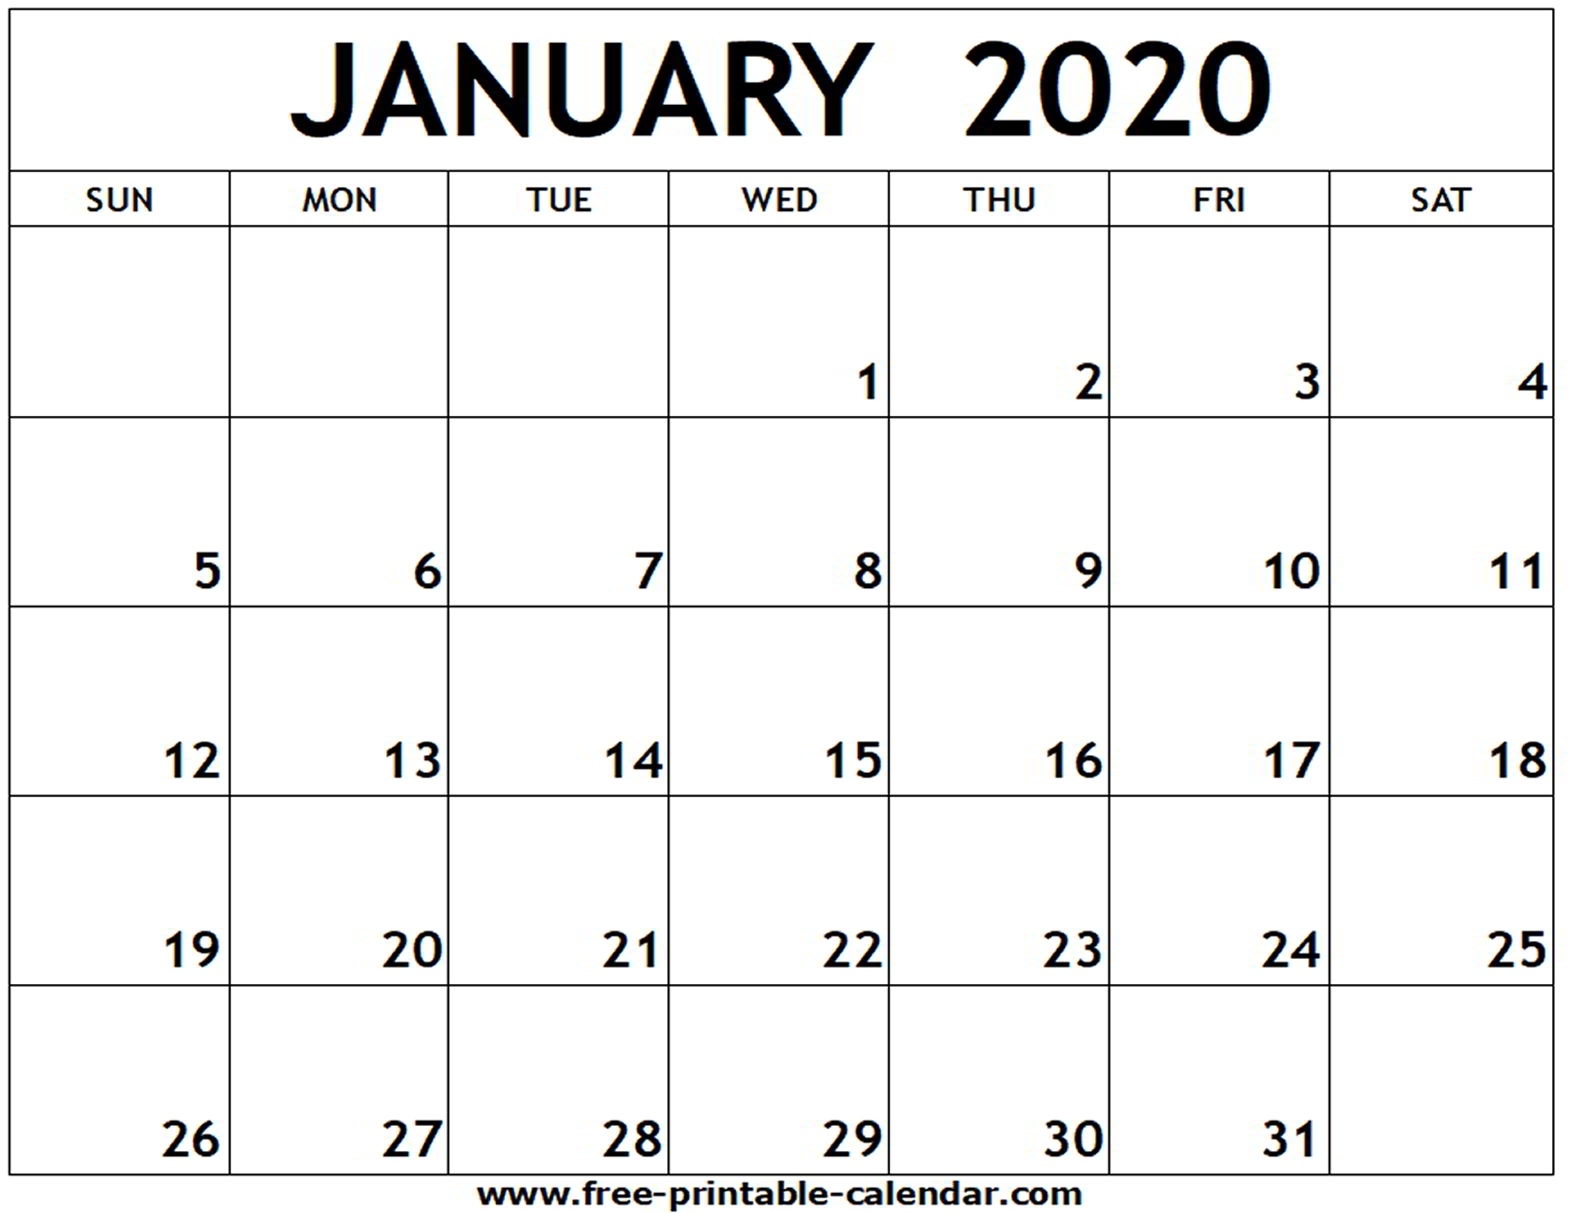 January 2020 Printable Calendar - Free-Printable-Calendar Exceptional 2020 Calendar Monthly Printable Free